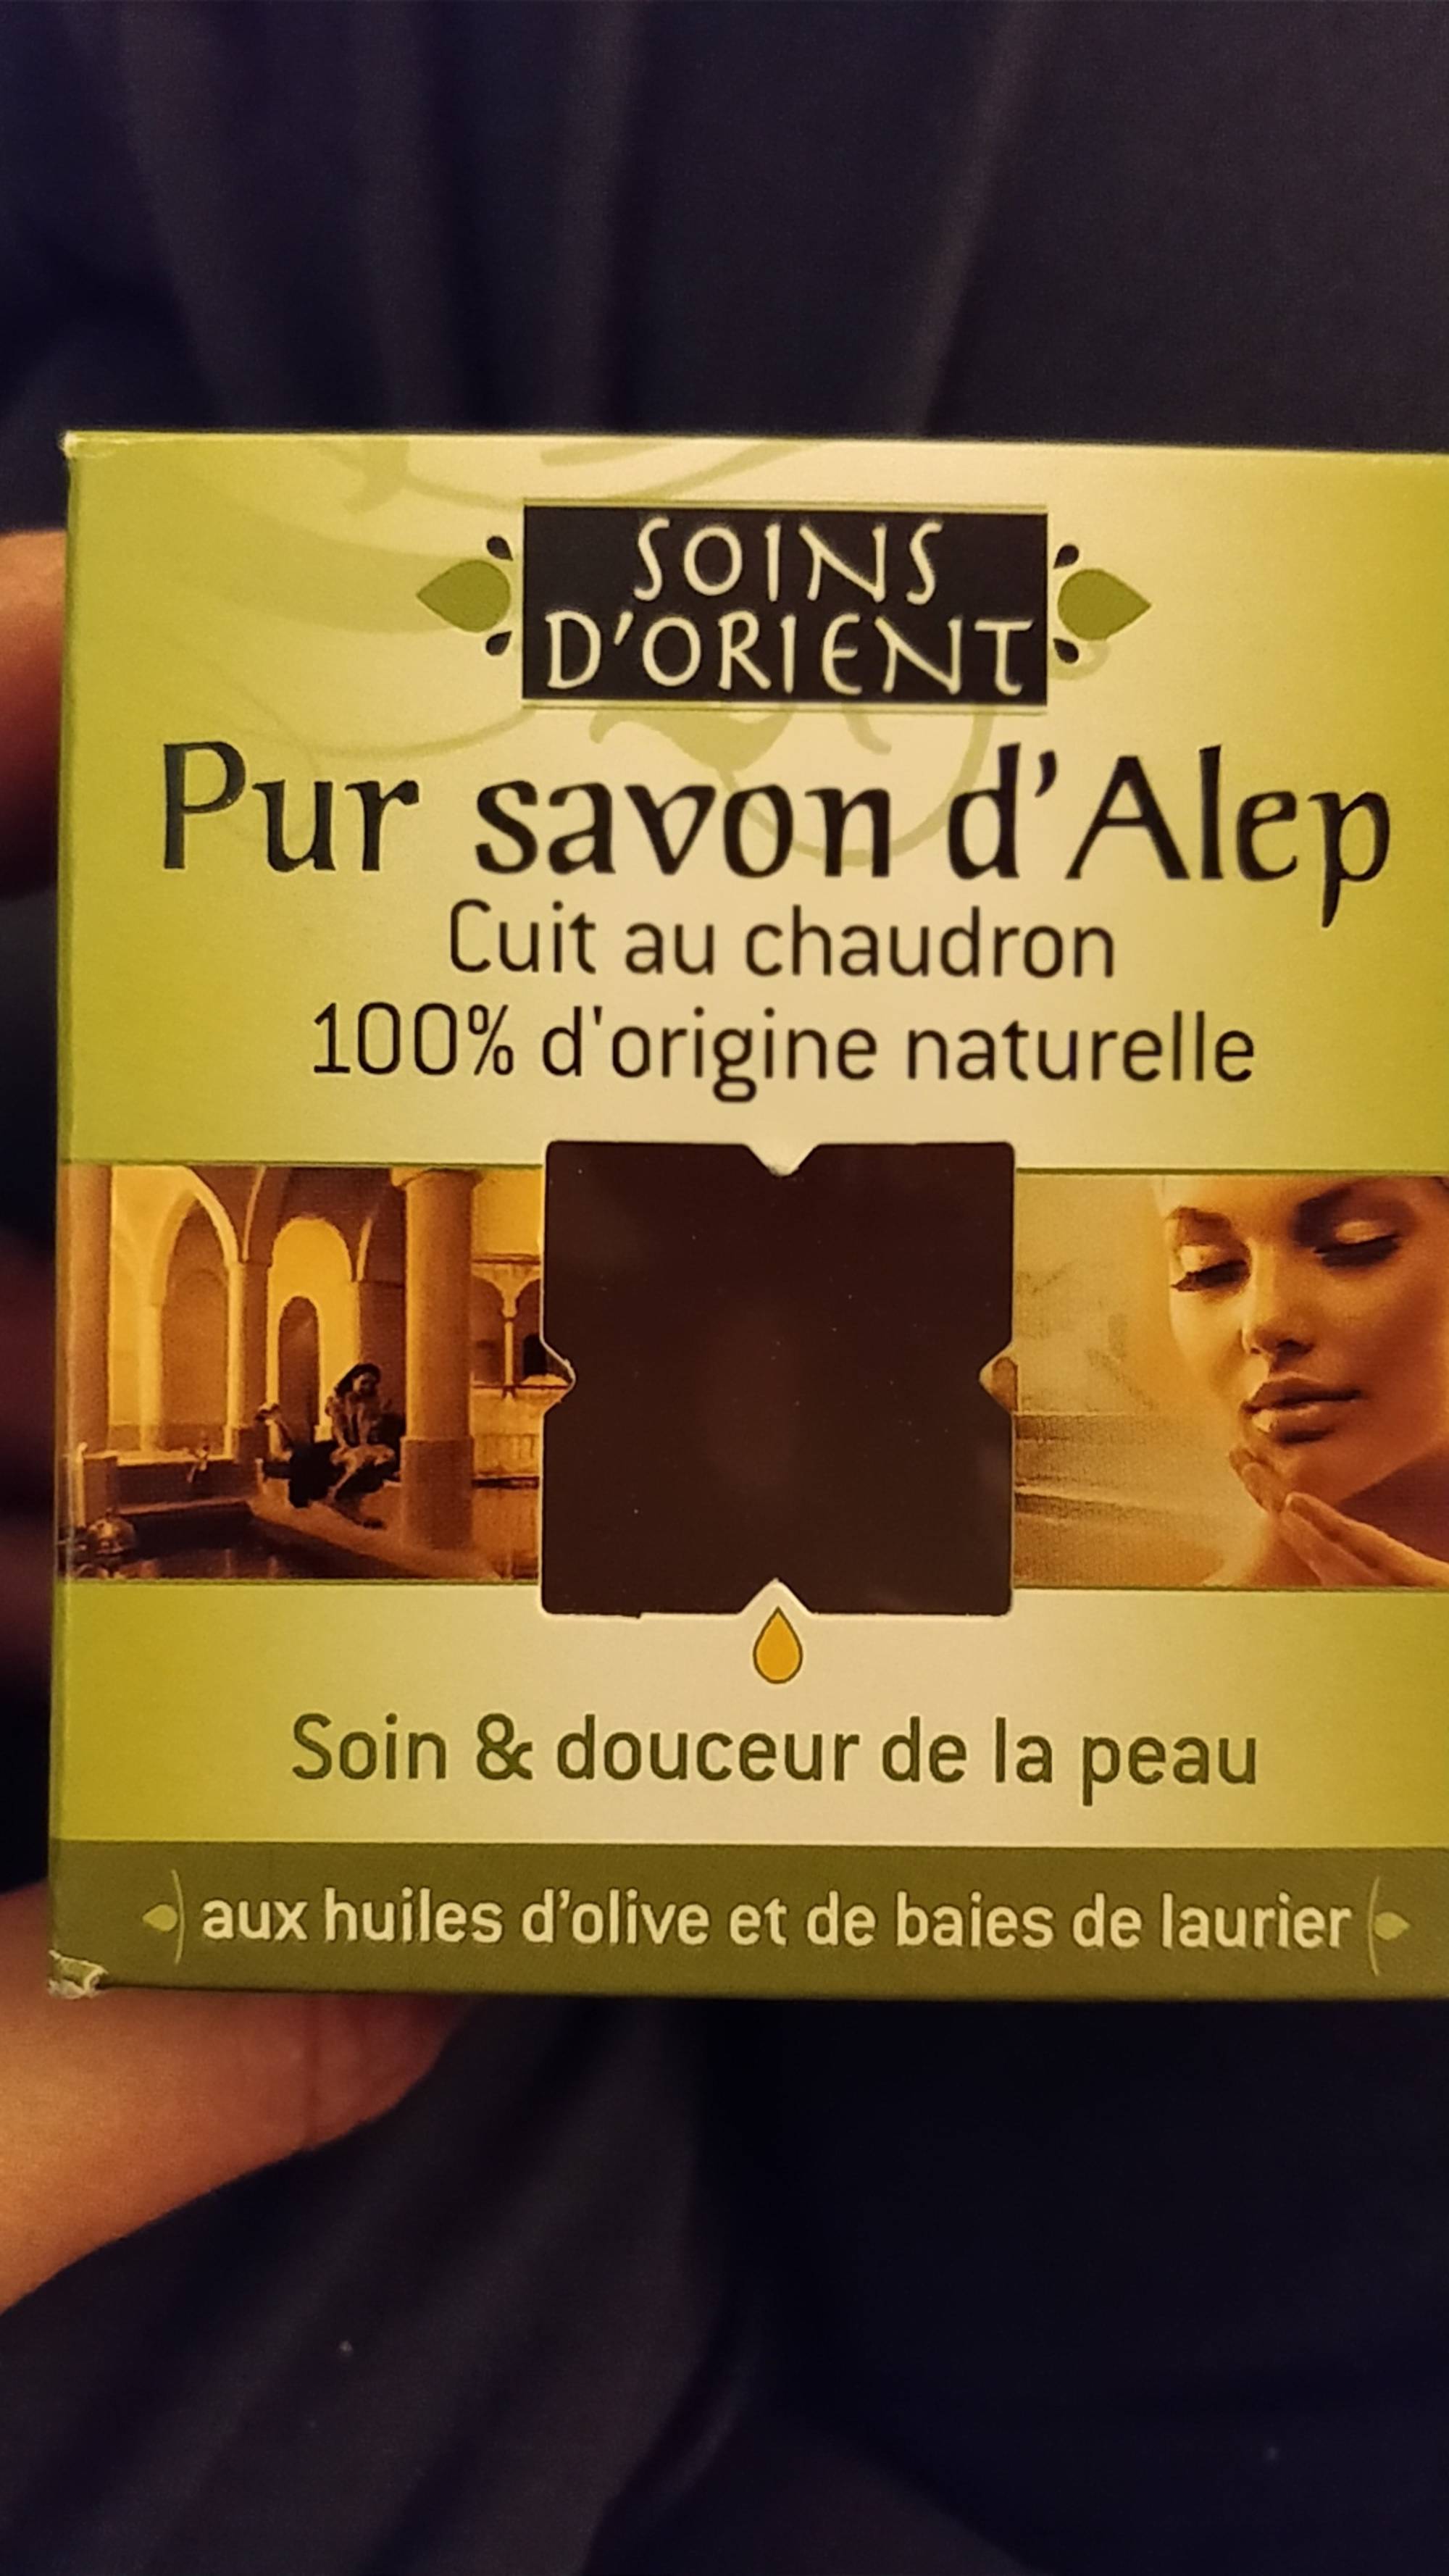 SOINS D'ORIENT - Pur savon d'Alep - Soin et douceur de la peau